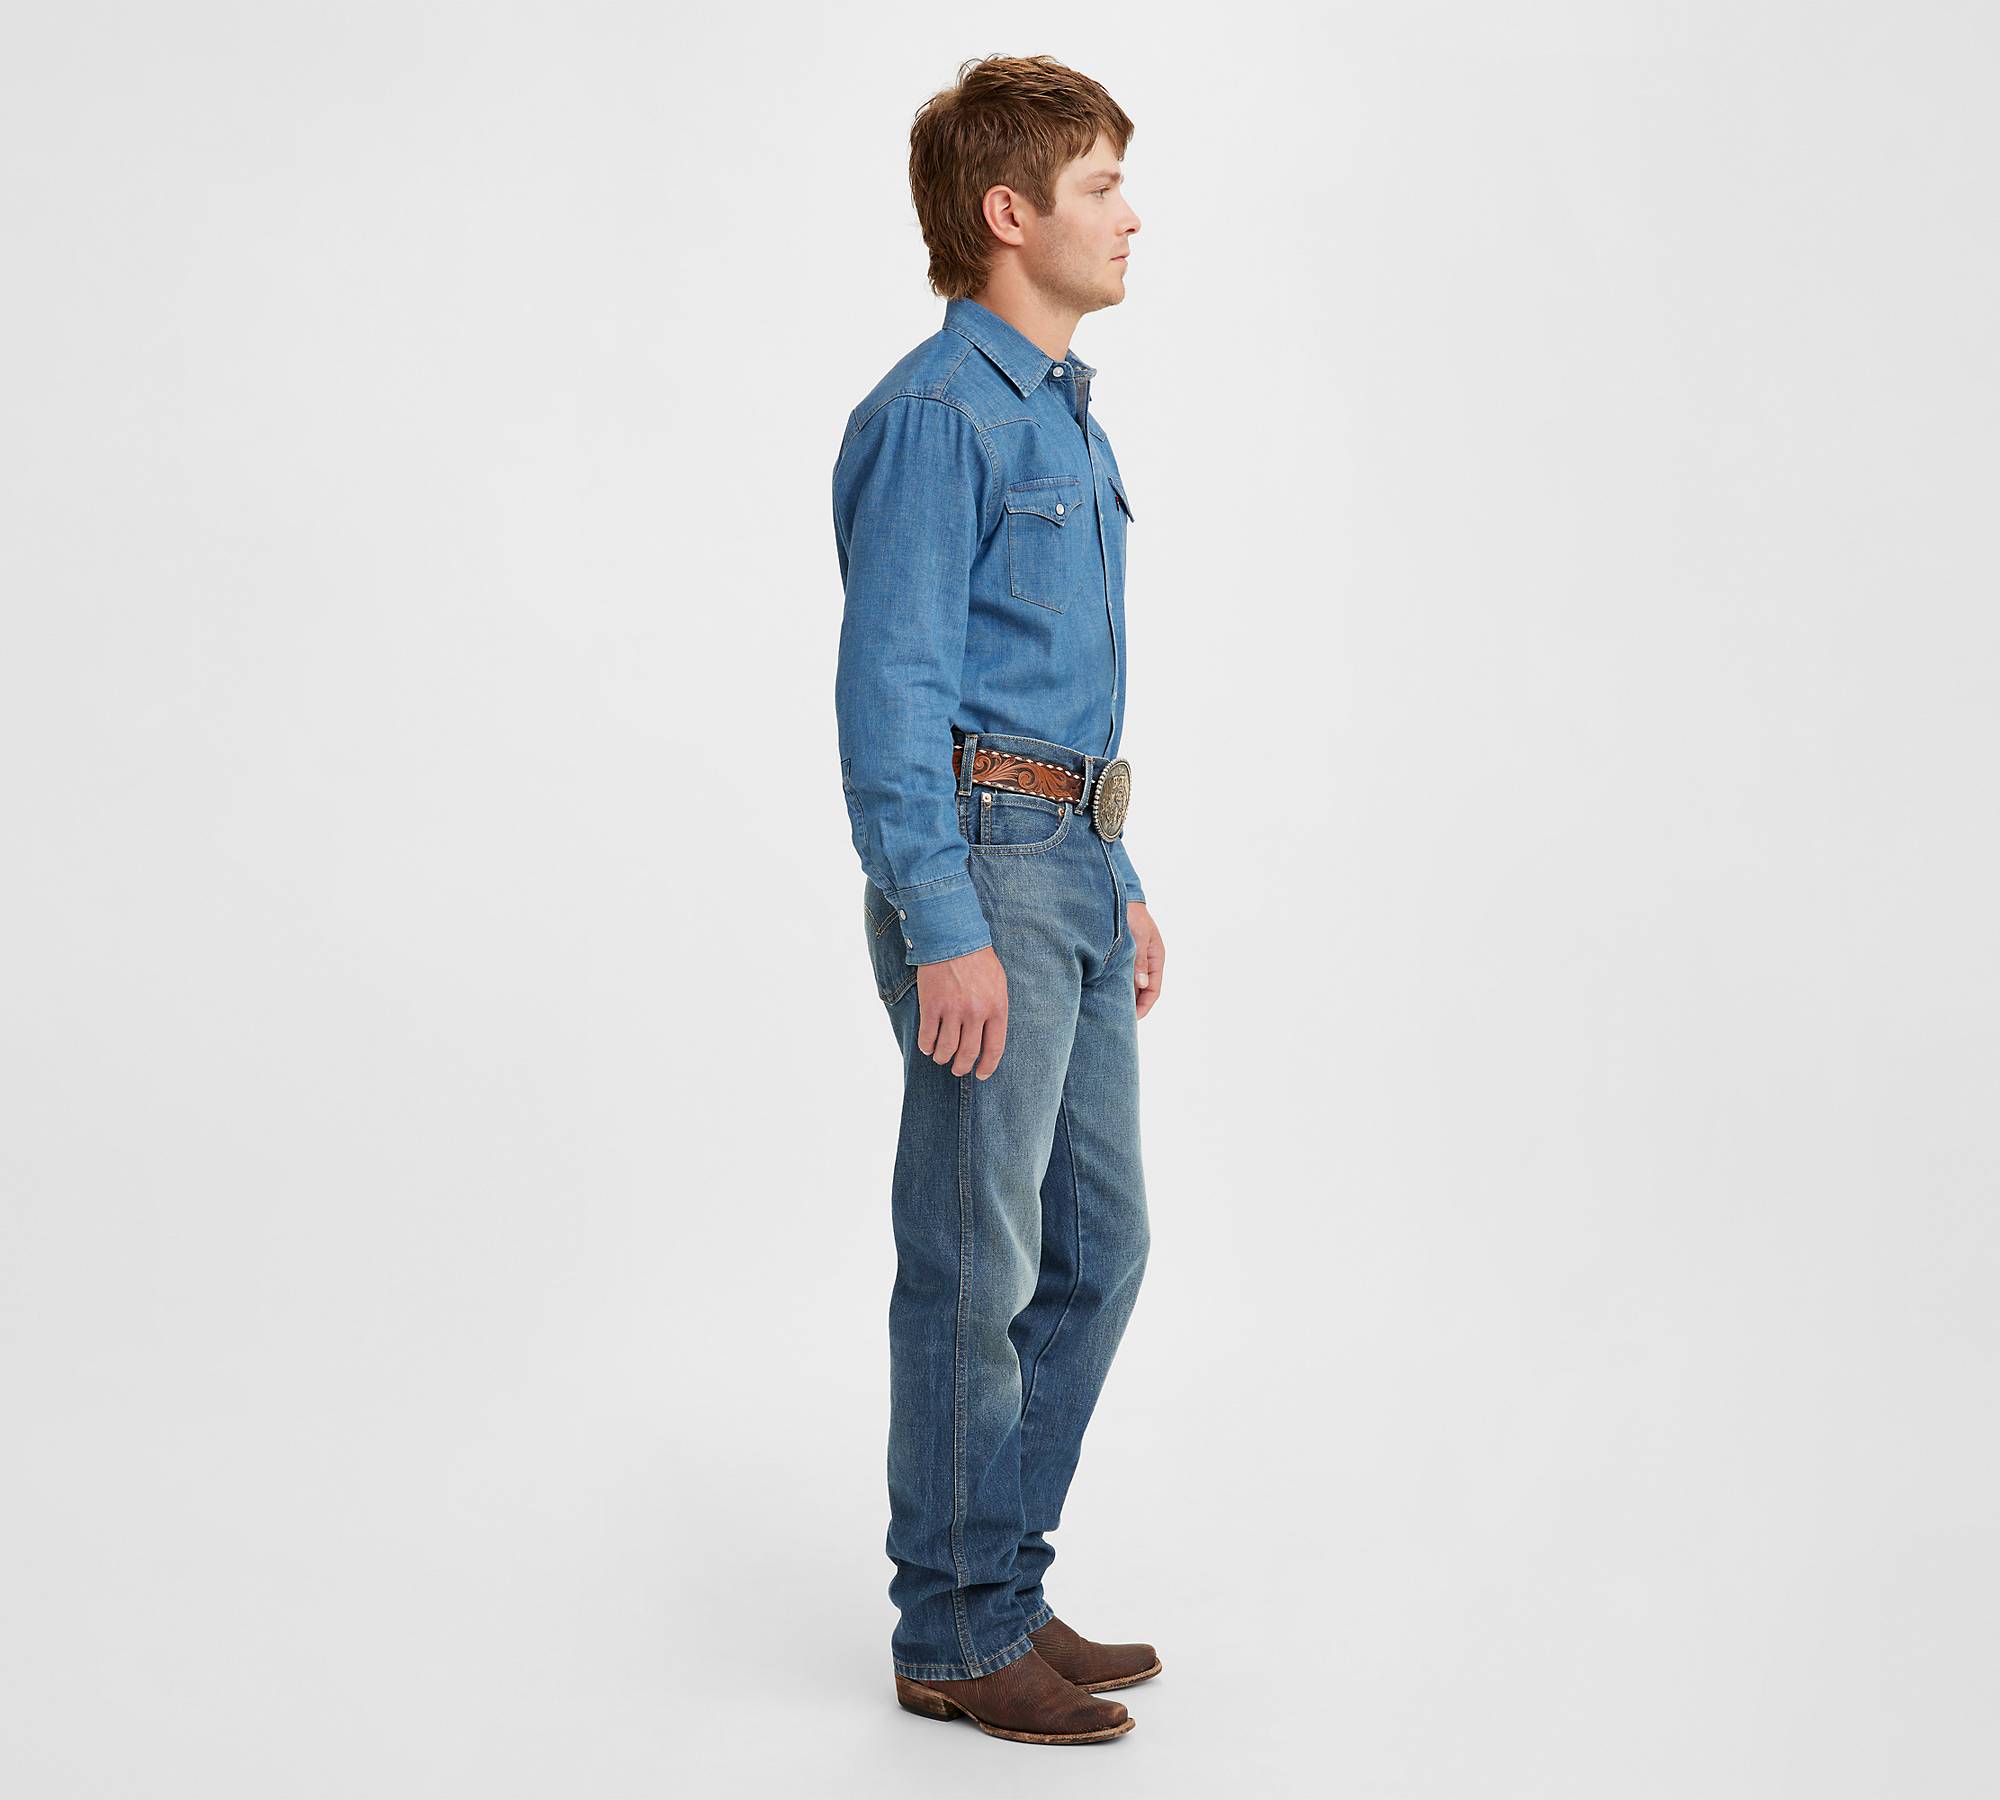 Western Fit Men's Jeans - Medium Wash | Levi's® US